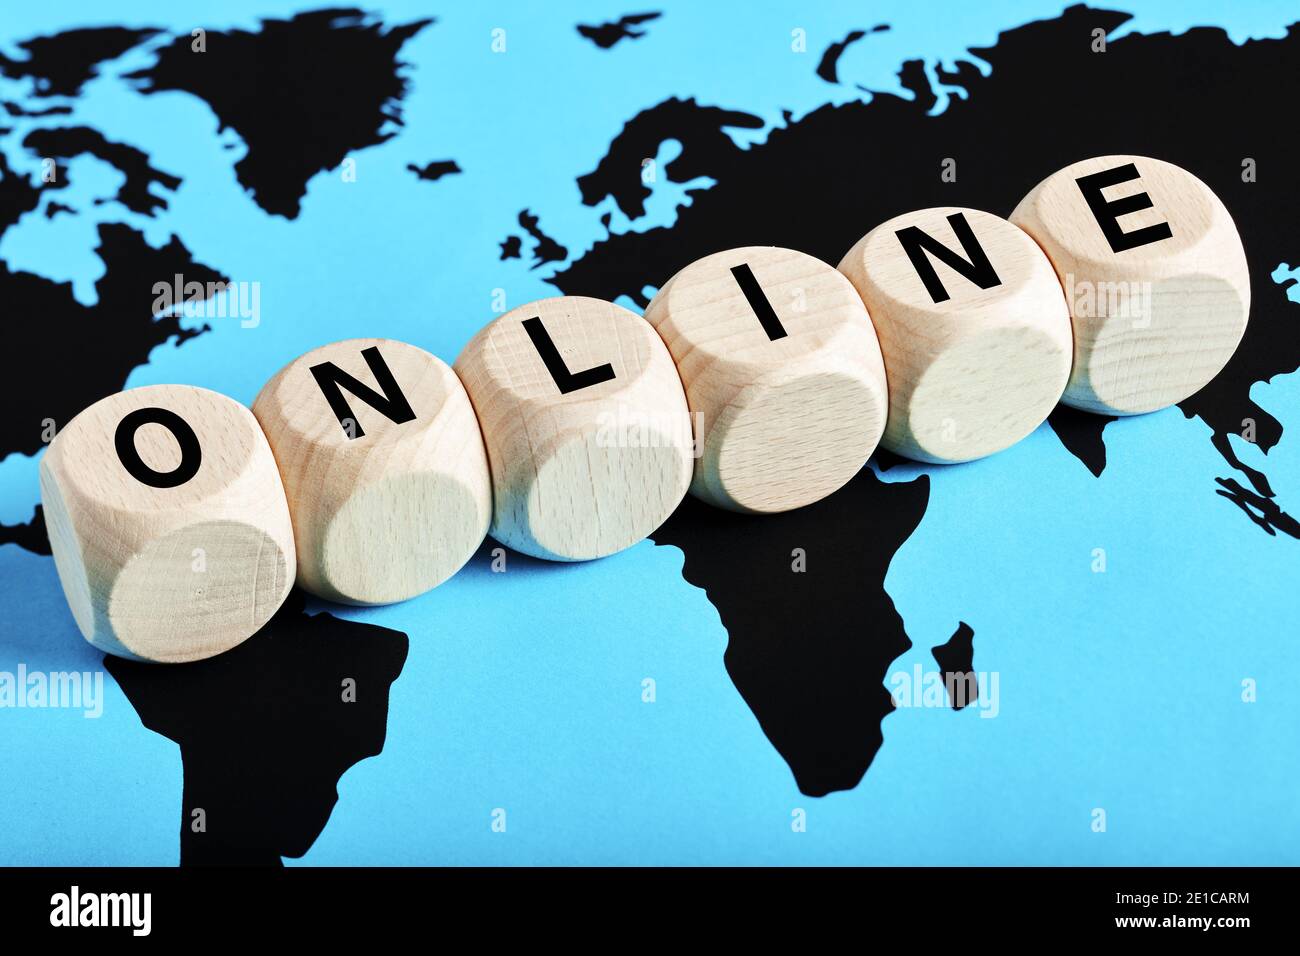 Das Wort online geschrieben auf Holzwürfel auf Weltkarte Hintergrund. Globale Online-Community, weltweite Kommunikation oder Online-Geschäftskonzept. Stockfoto